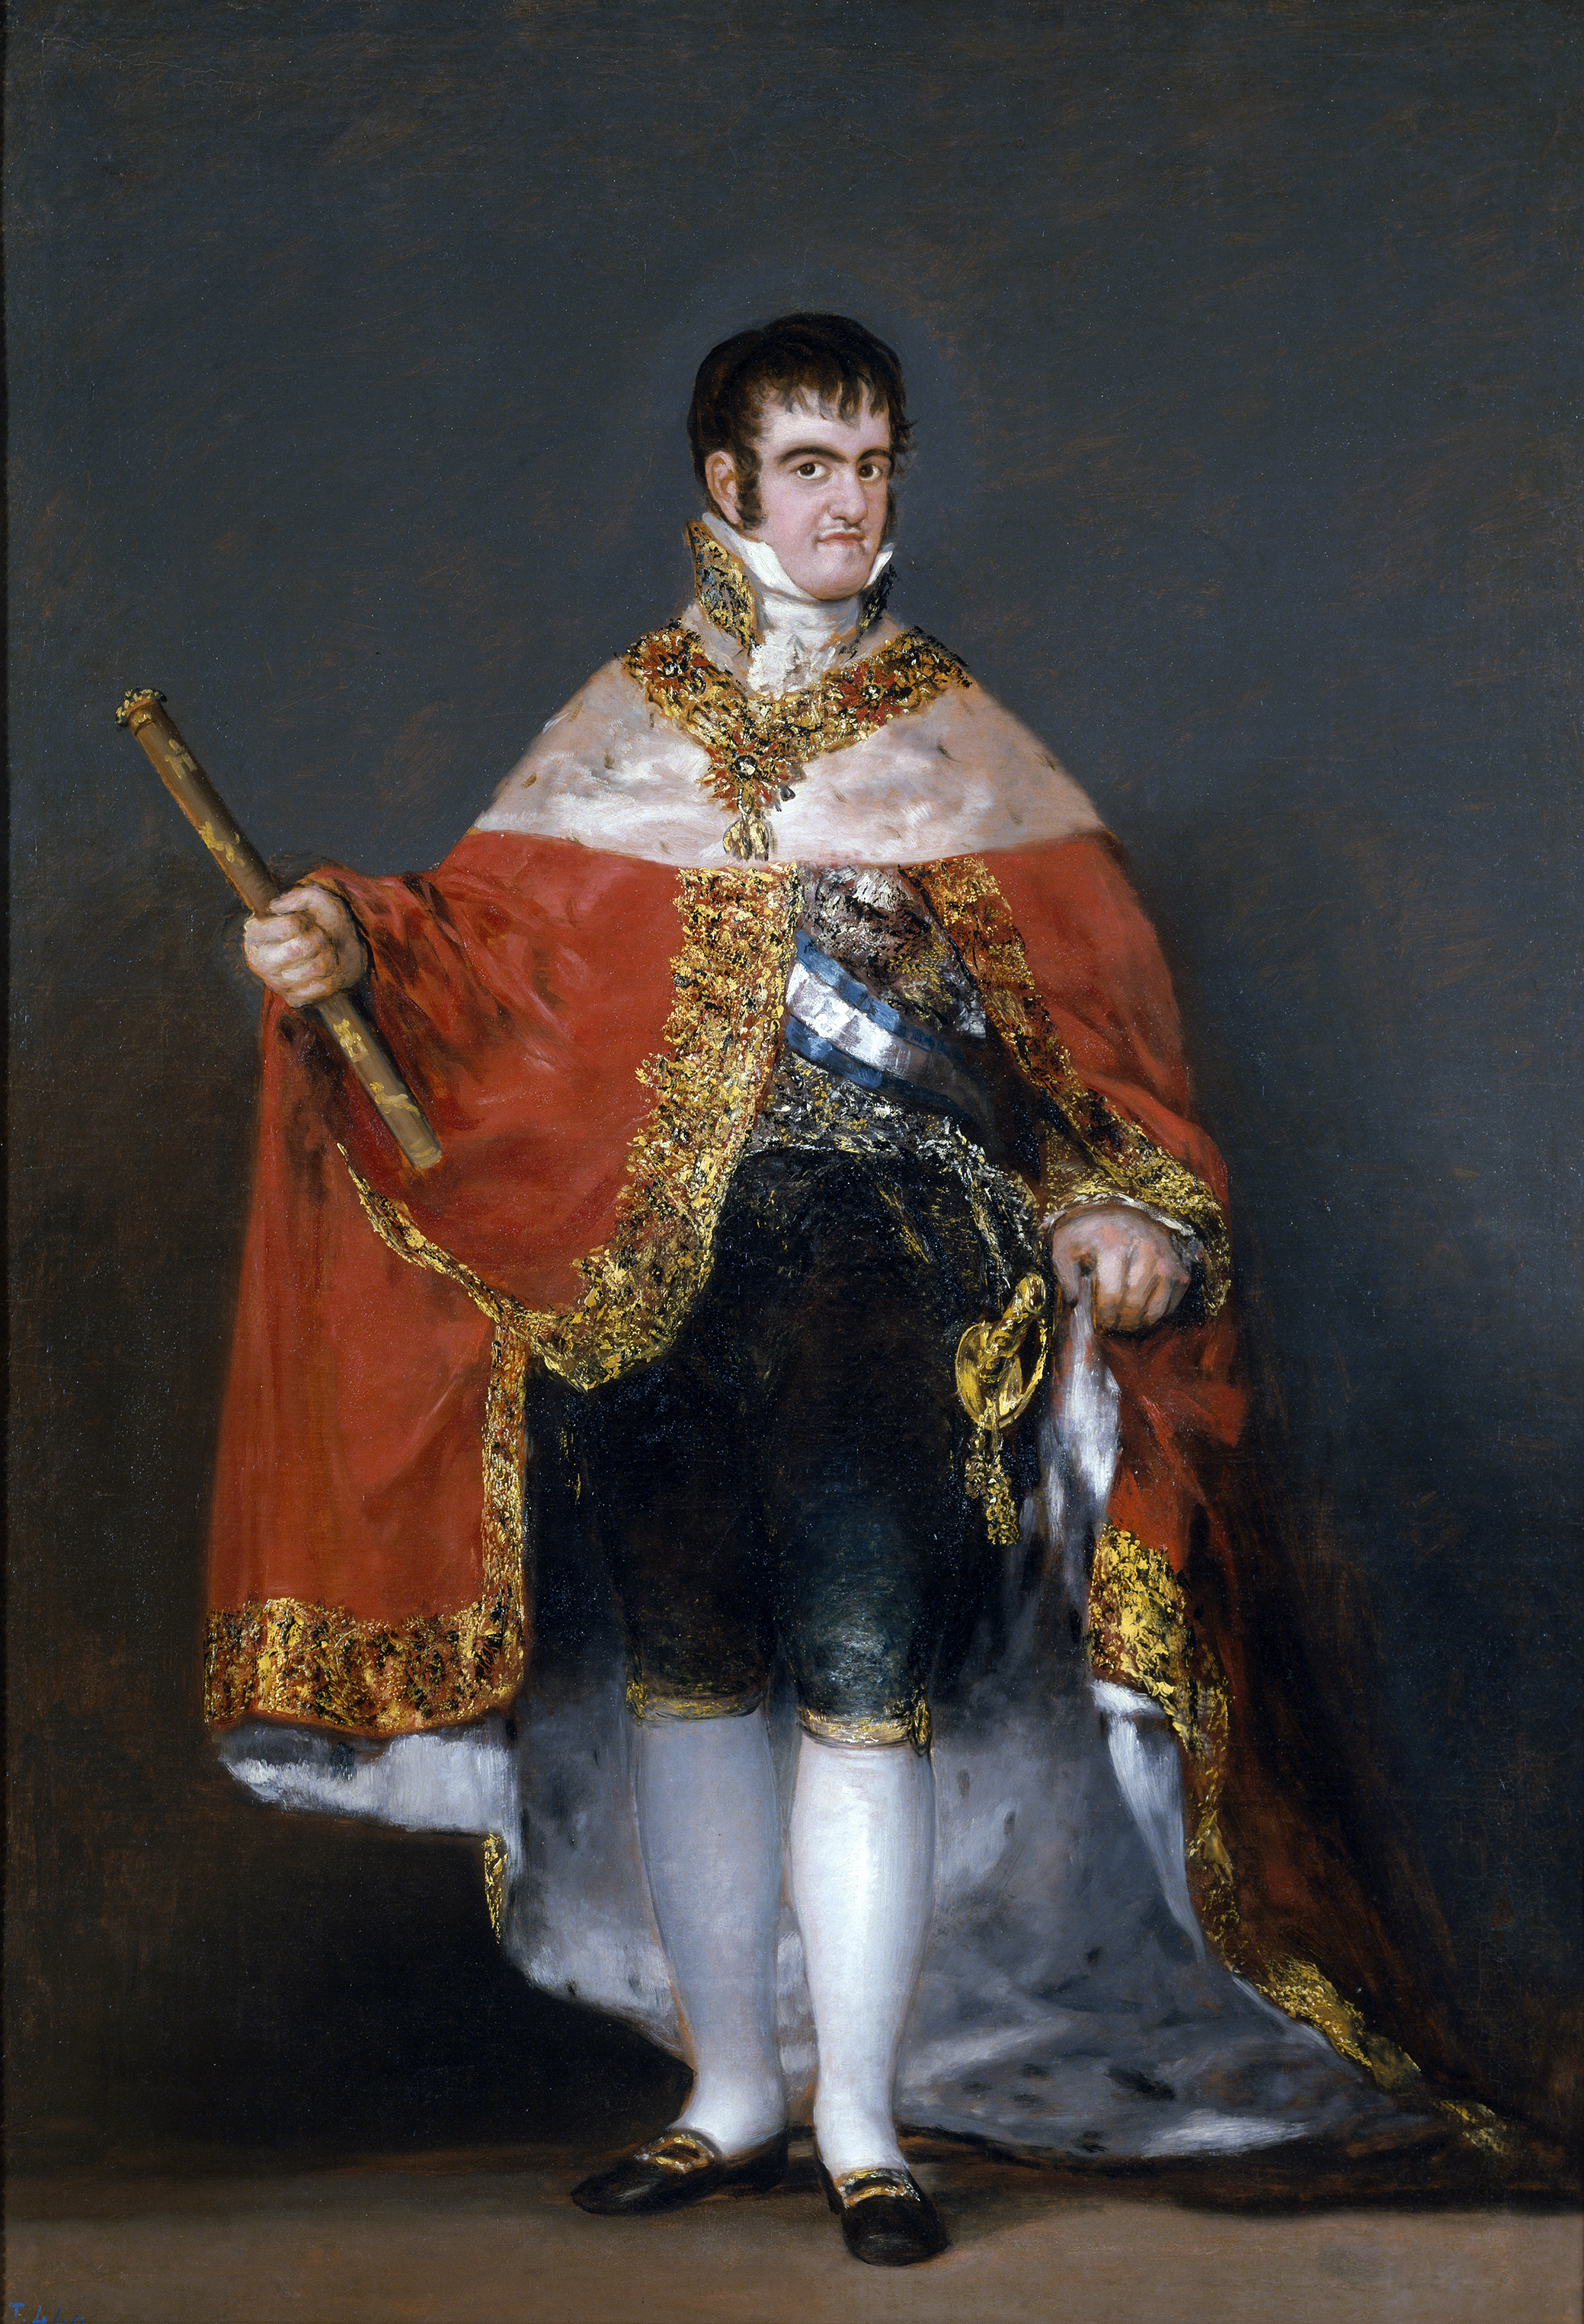 Francisco_Goya_-_Portrait_of_Ferdinand_VII_of_Spain_in_his_robes_of_state_(1815)_-_Prado (2).jpg